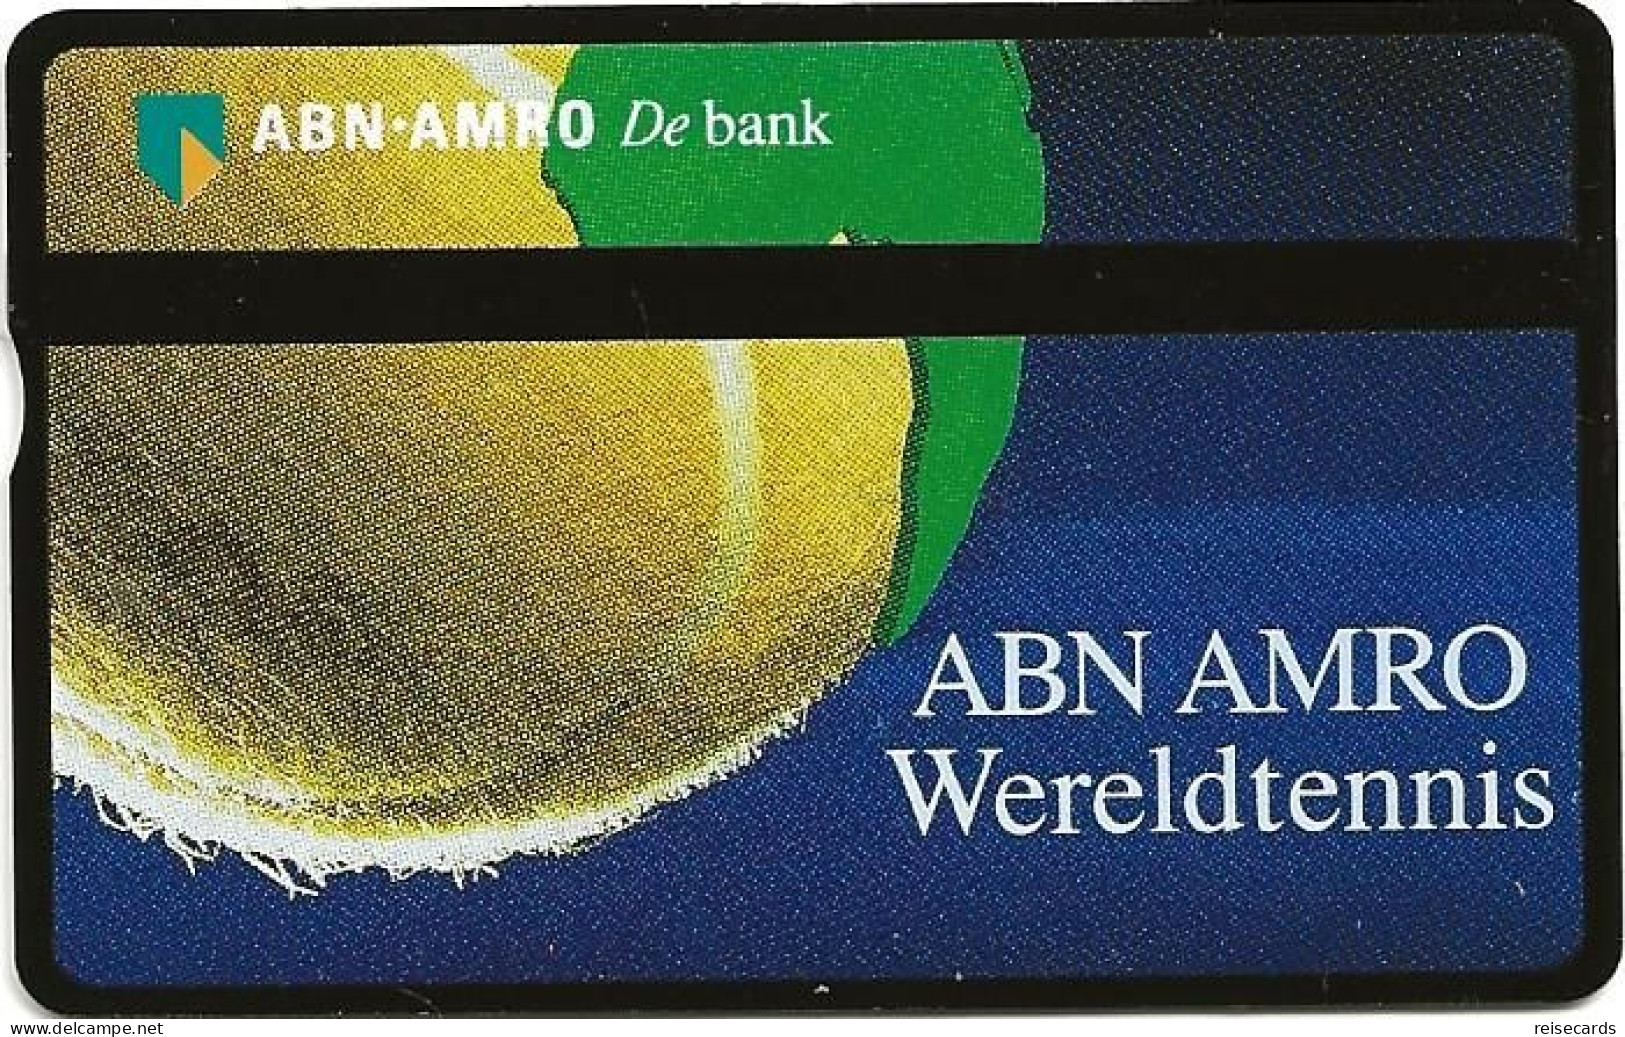 Netherlands: Ptt Telecom - ABN AMRO Bank - Wereldtennis - Openbaar